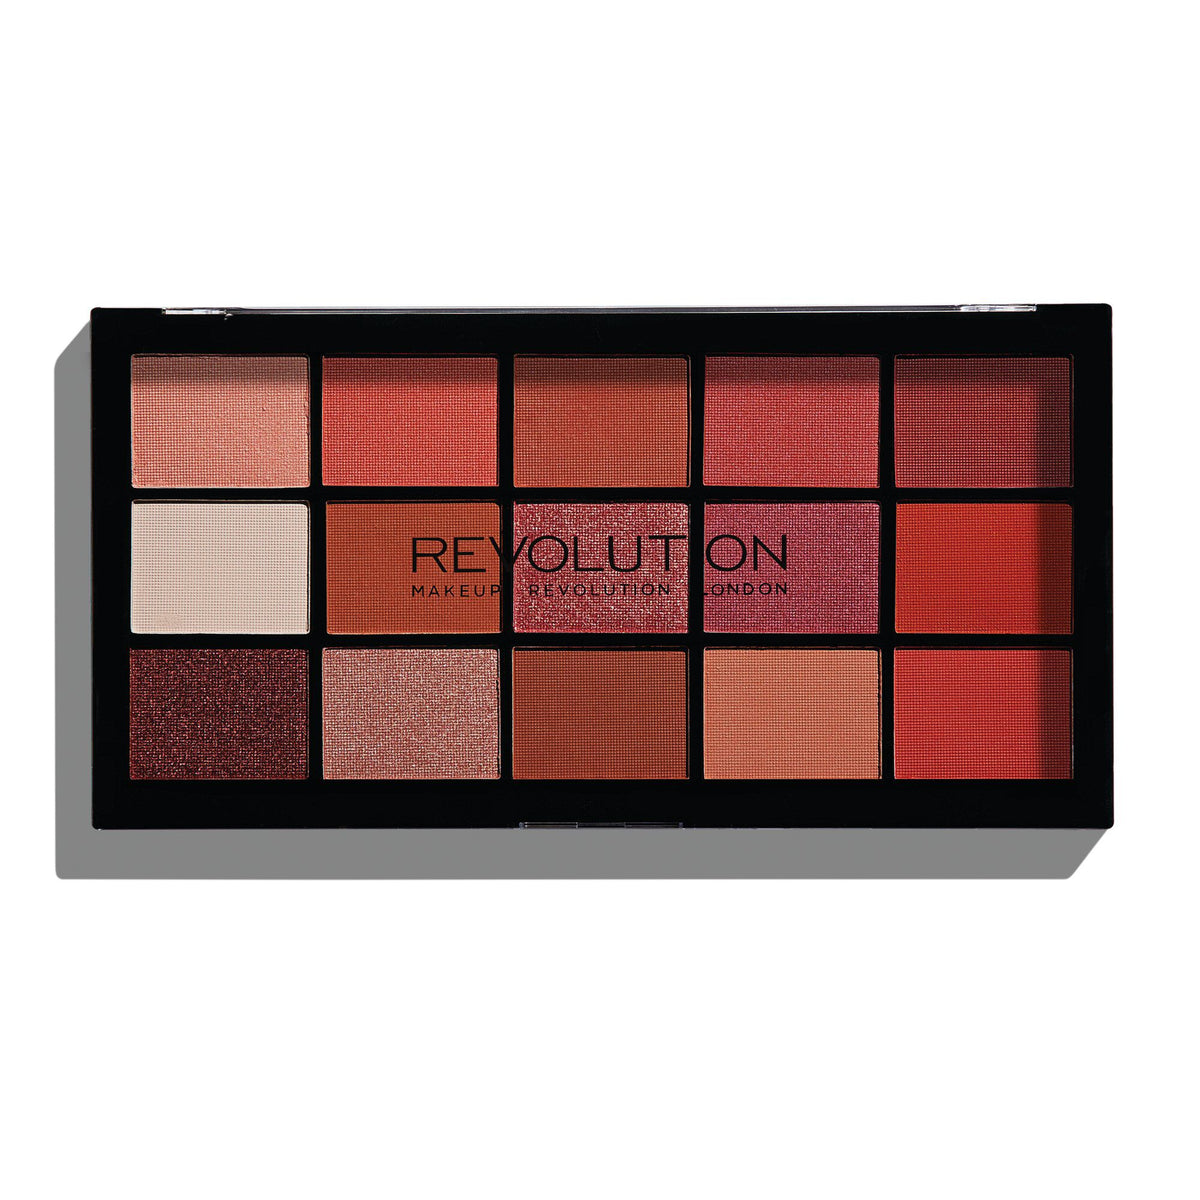 Makeup Revolution Reloaded Palette Newtrals 2